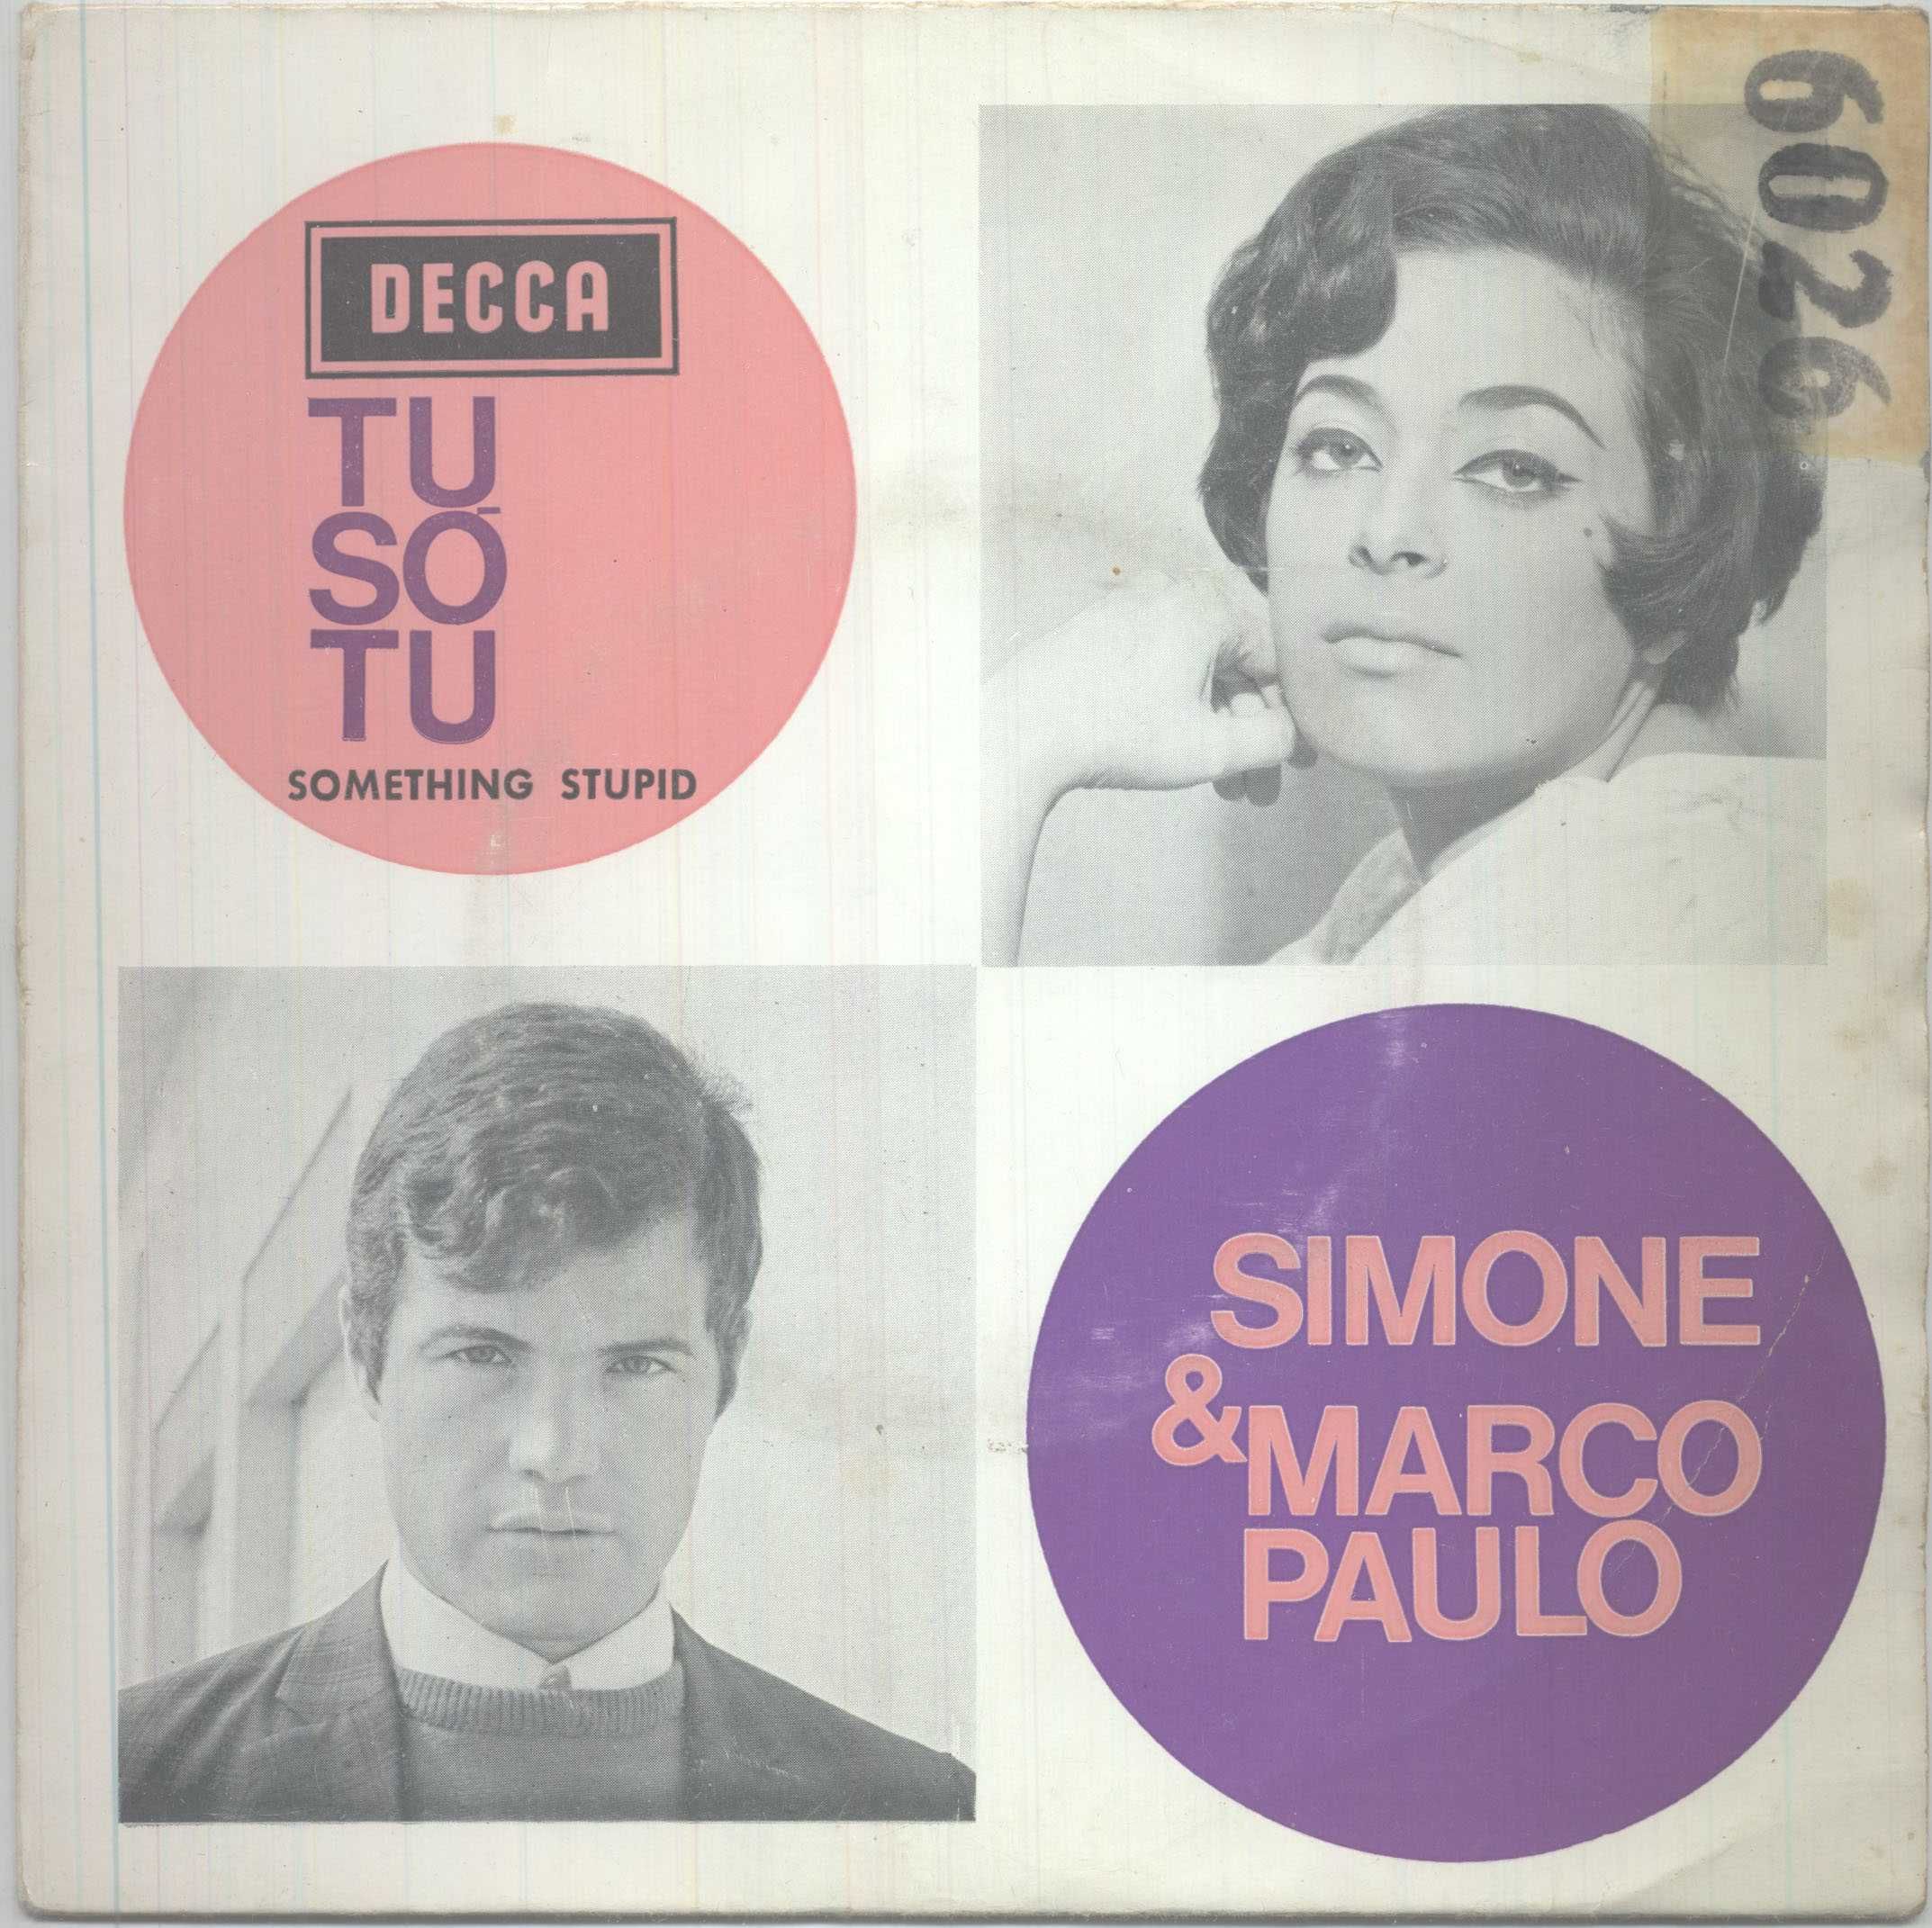 Simone de Oliveira Diversos Livro Discos